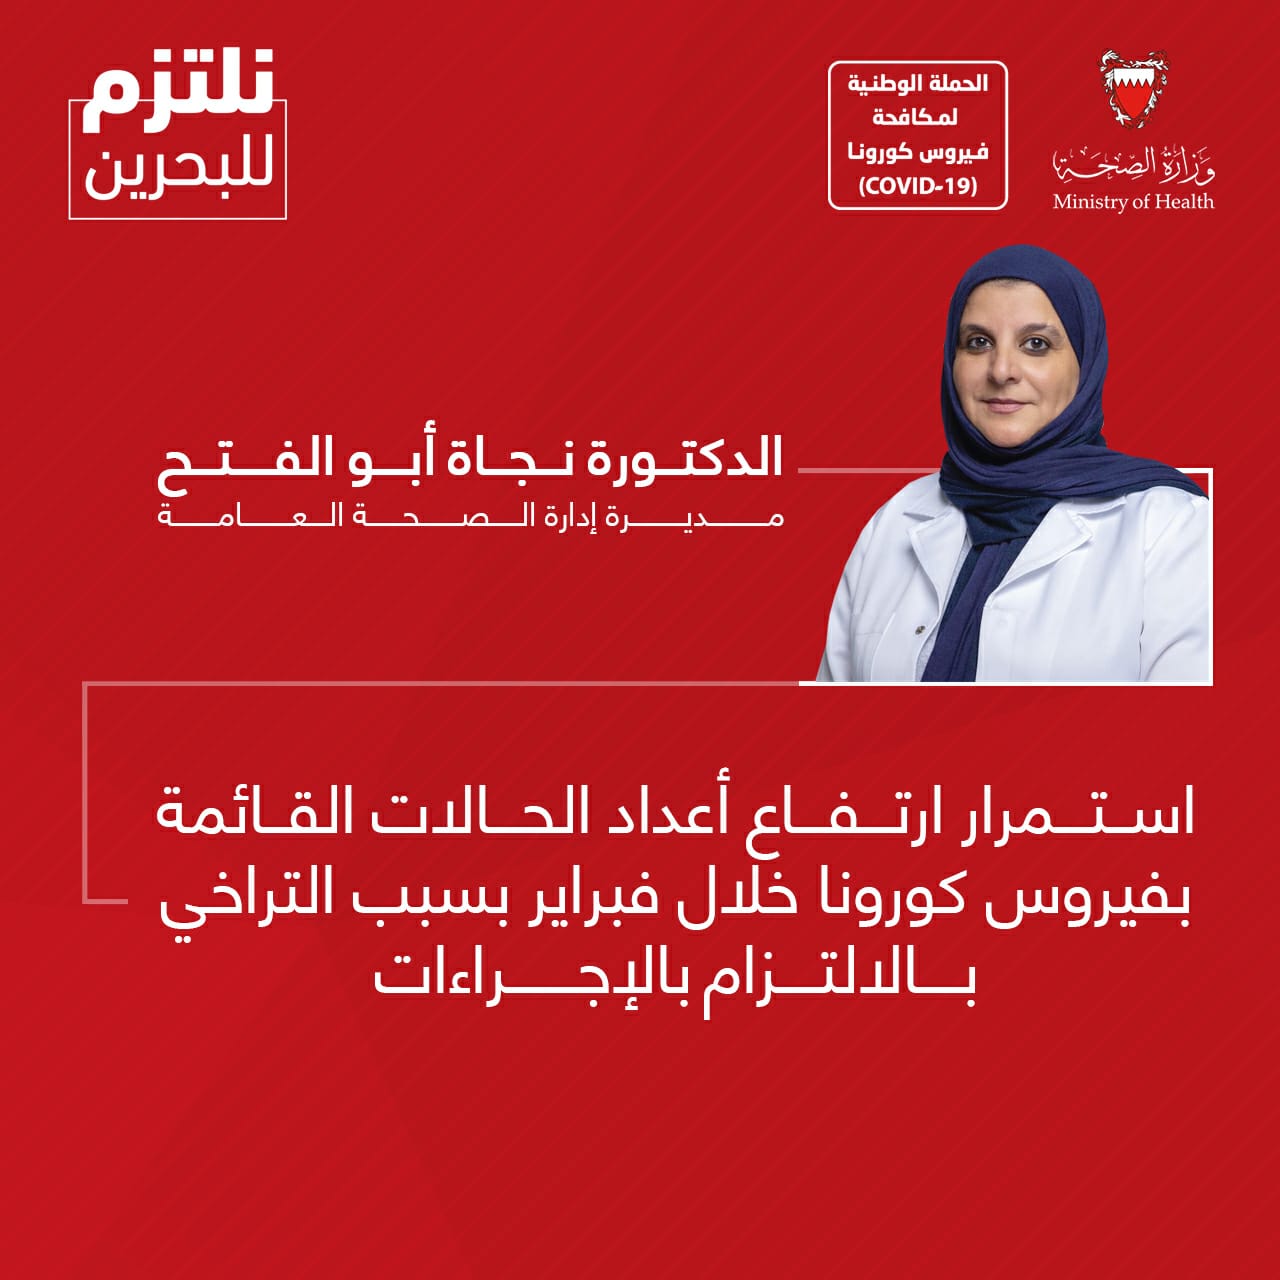 الدكتورة نجاة أبو الفتح: استمرار ارتفاع أعداد الحالات القائمة بفيروس كورونا خلال فبراير بسبب التراخي بالالتزام بالإجراءات